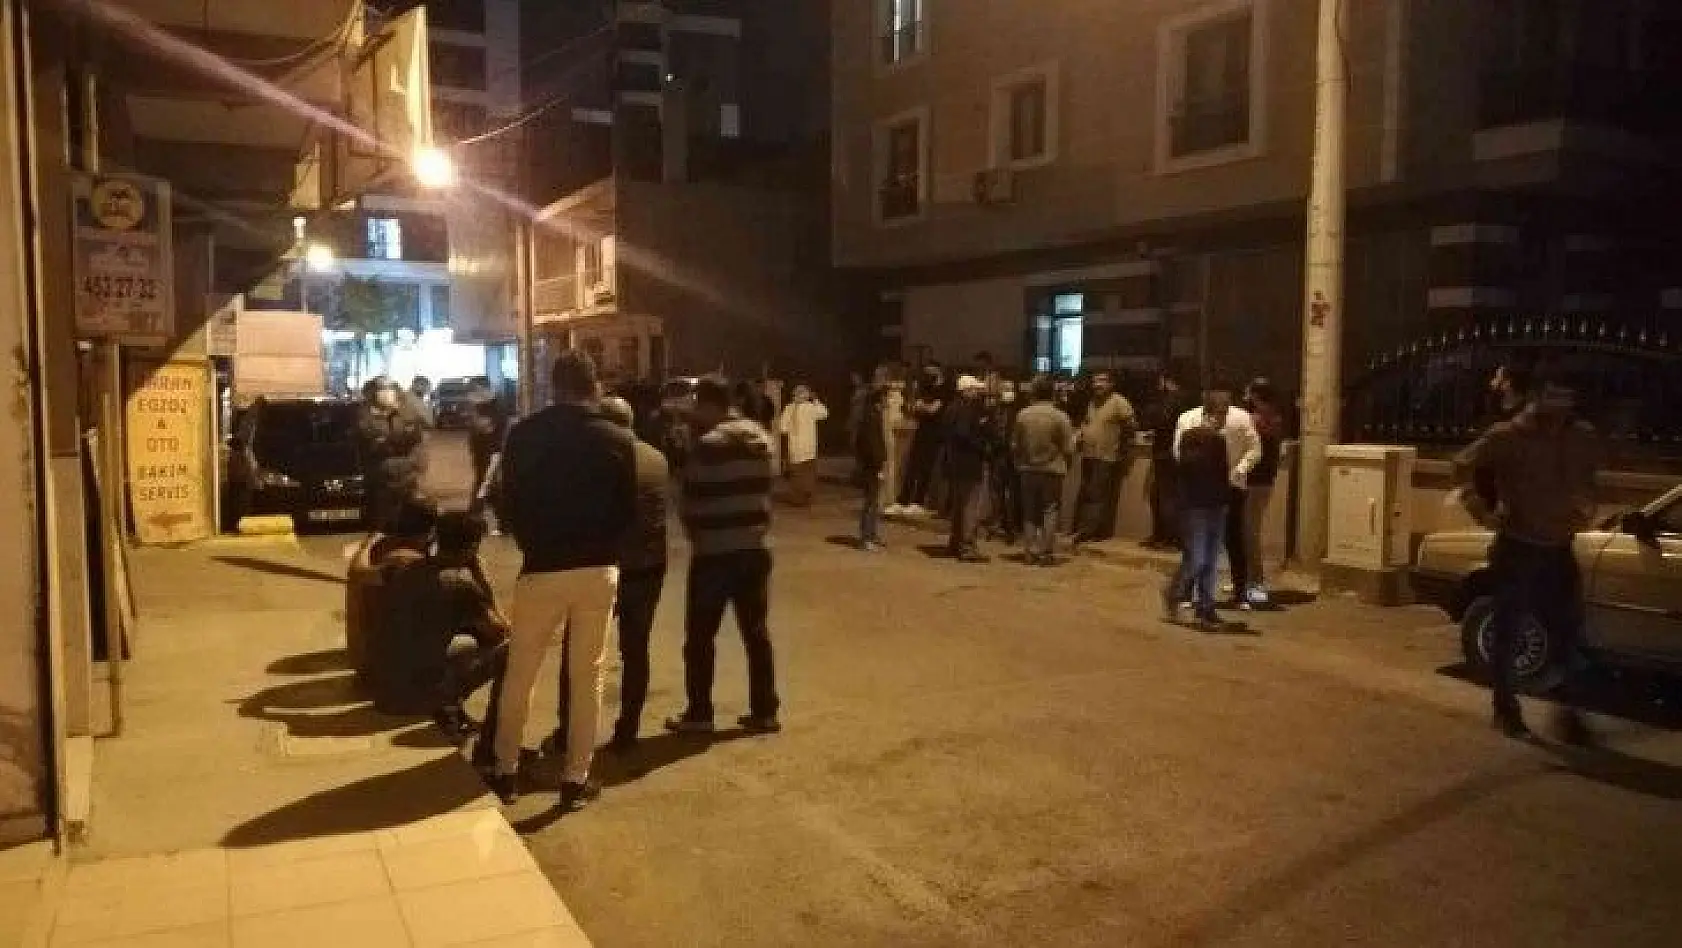 İzmir'de 20 günlük bebeği olan adamın öldürülmesiyle ilgili bir tutuklama